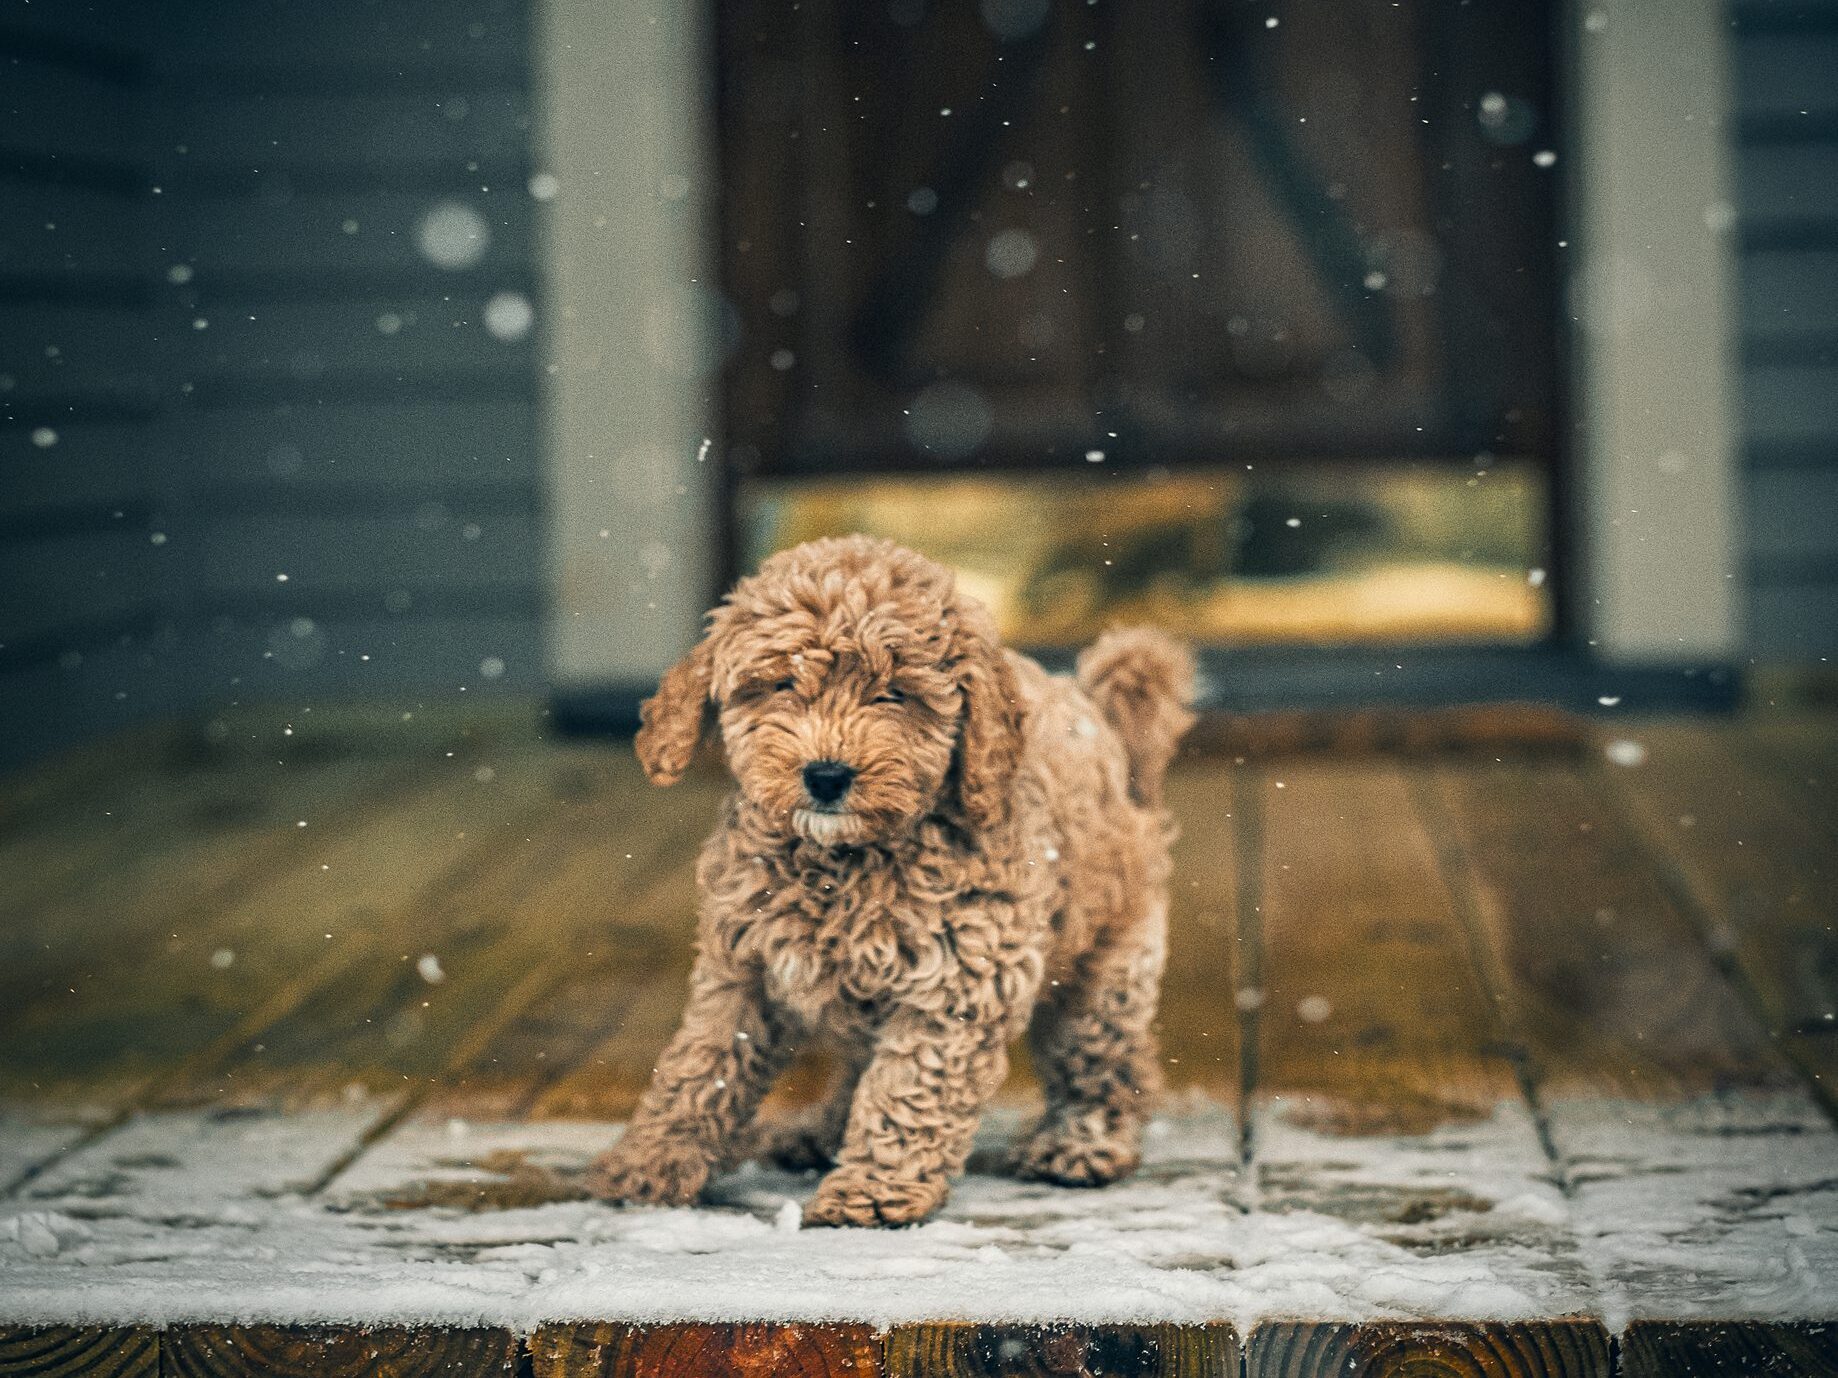 puppy on snowy deck in winter